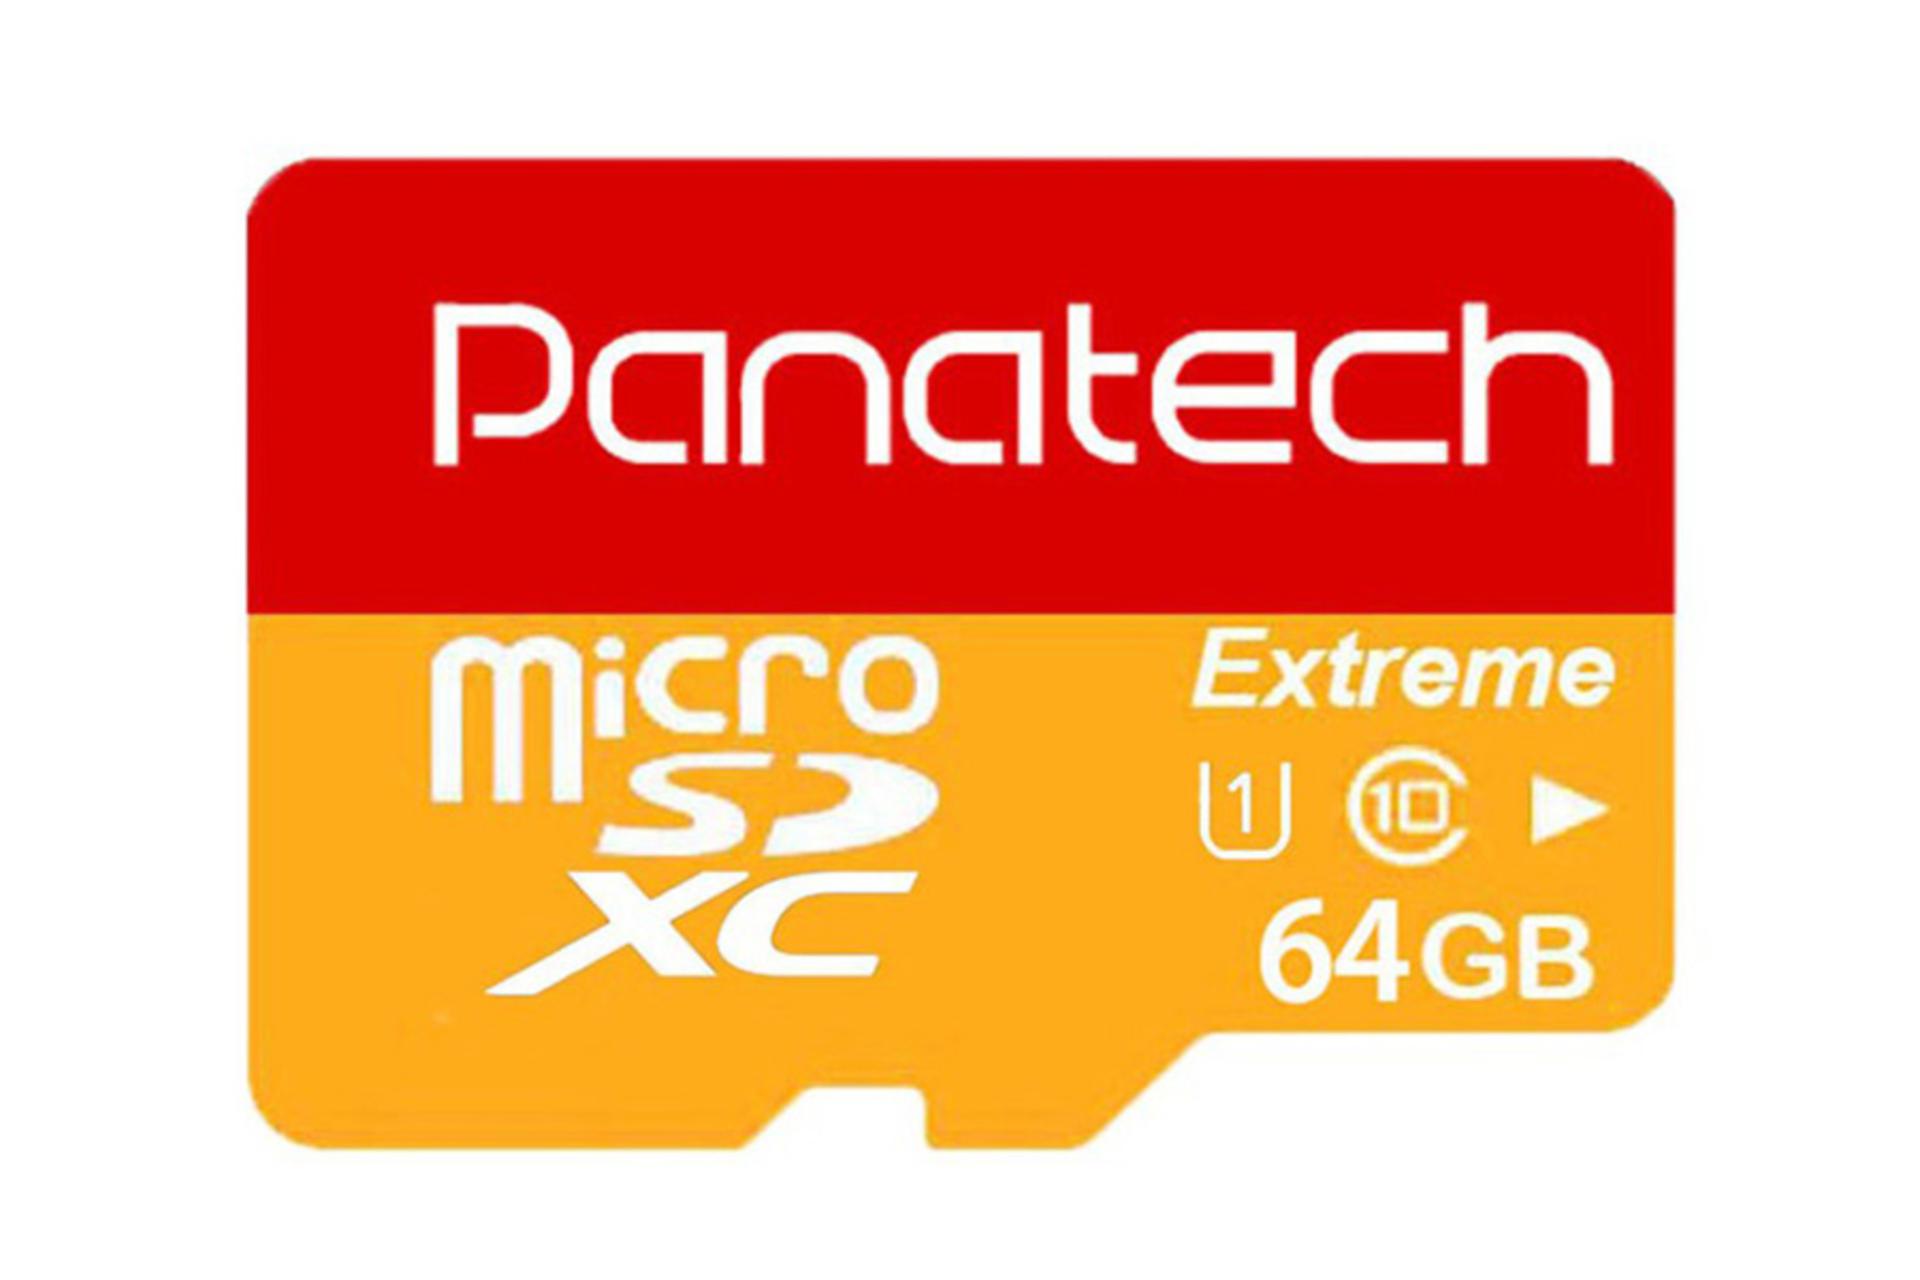 کارت حافظه پاناتک Panatech Extreme microSDXC Class 10 UHS-I U1 64GB